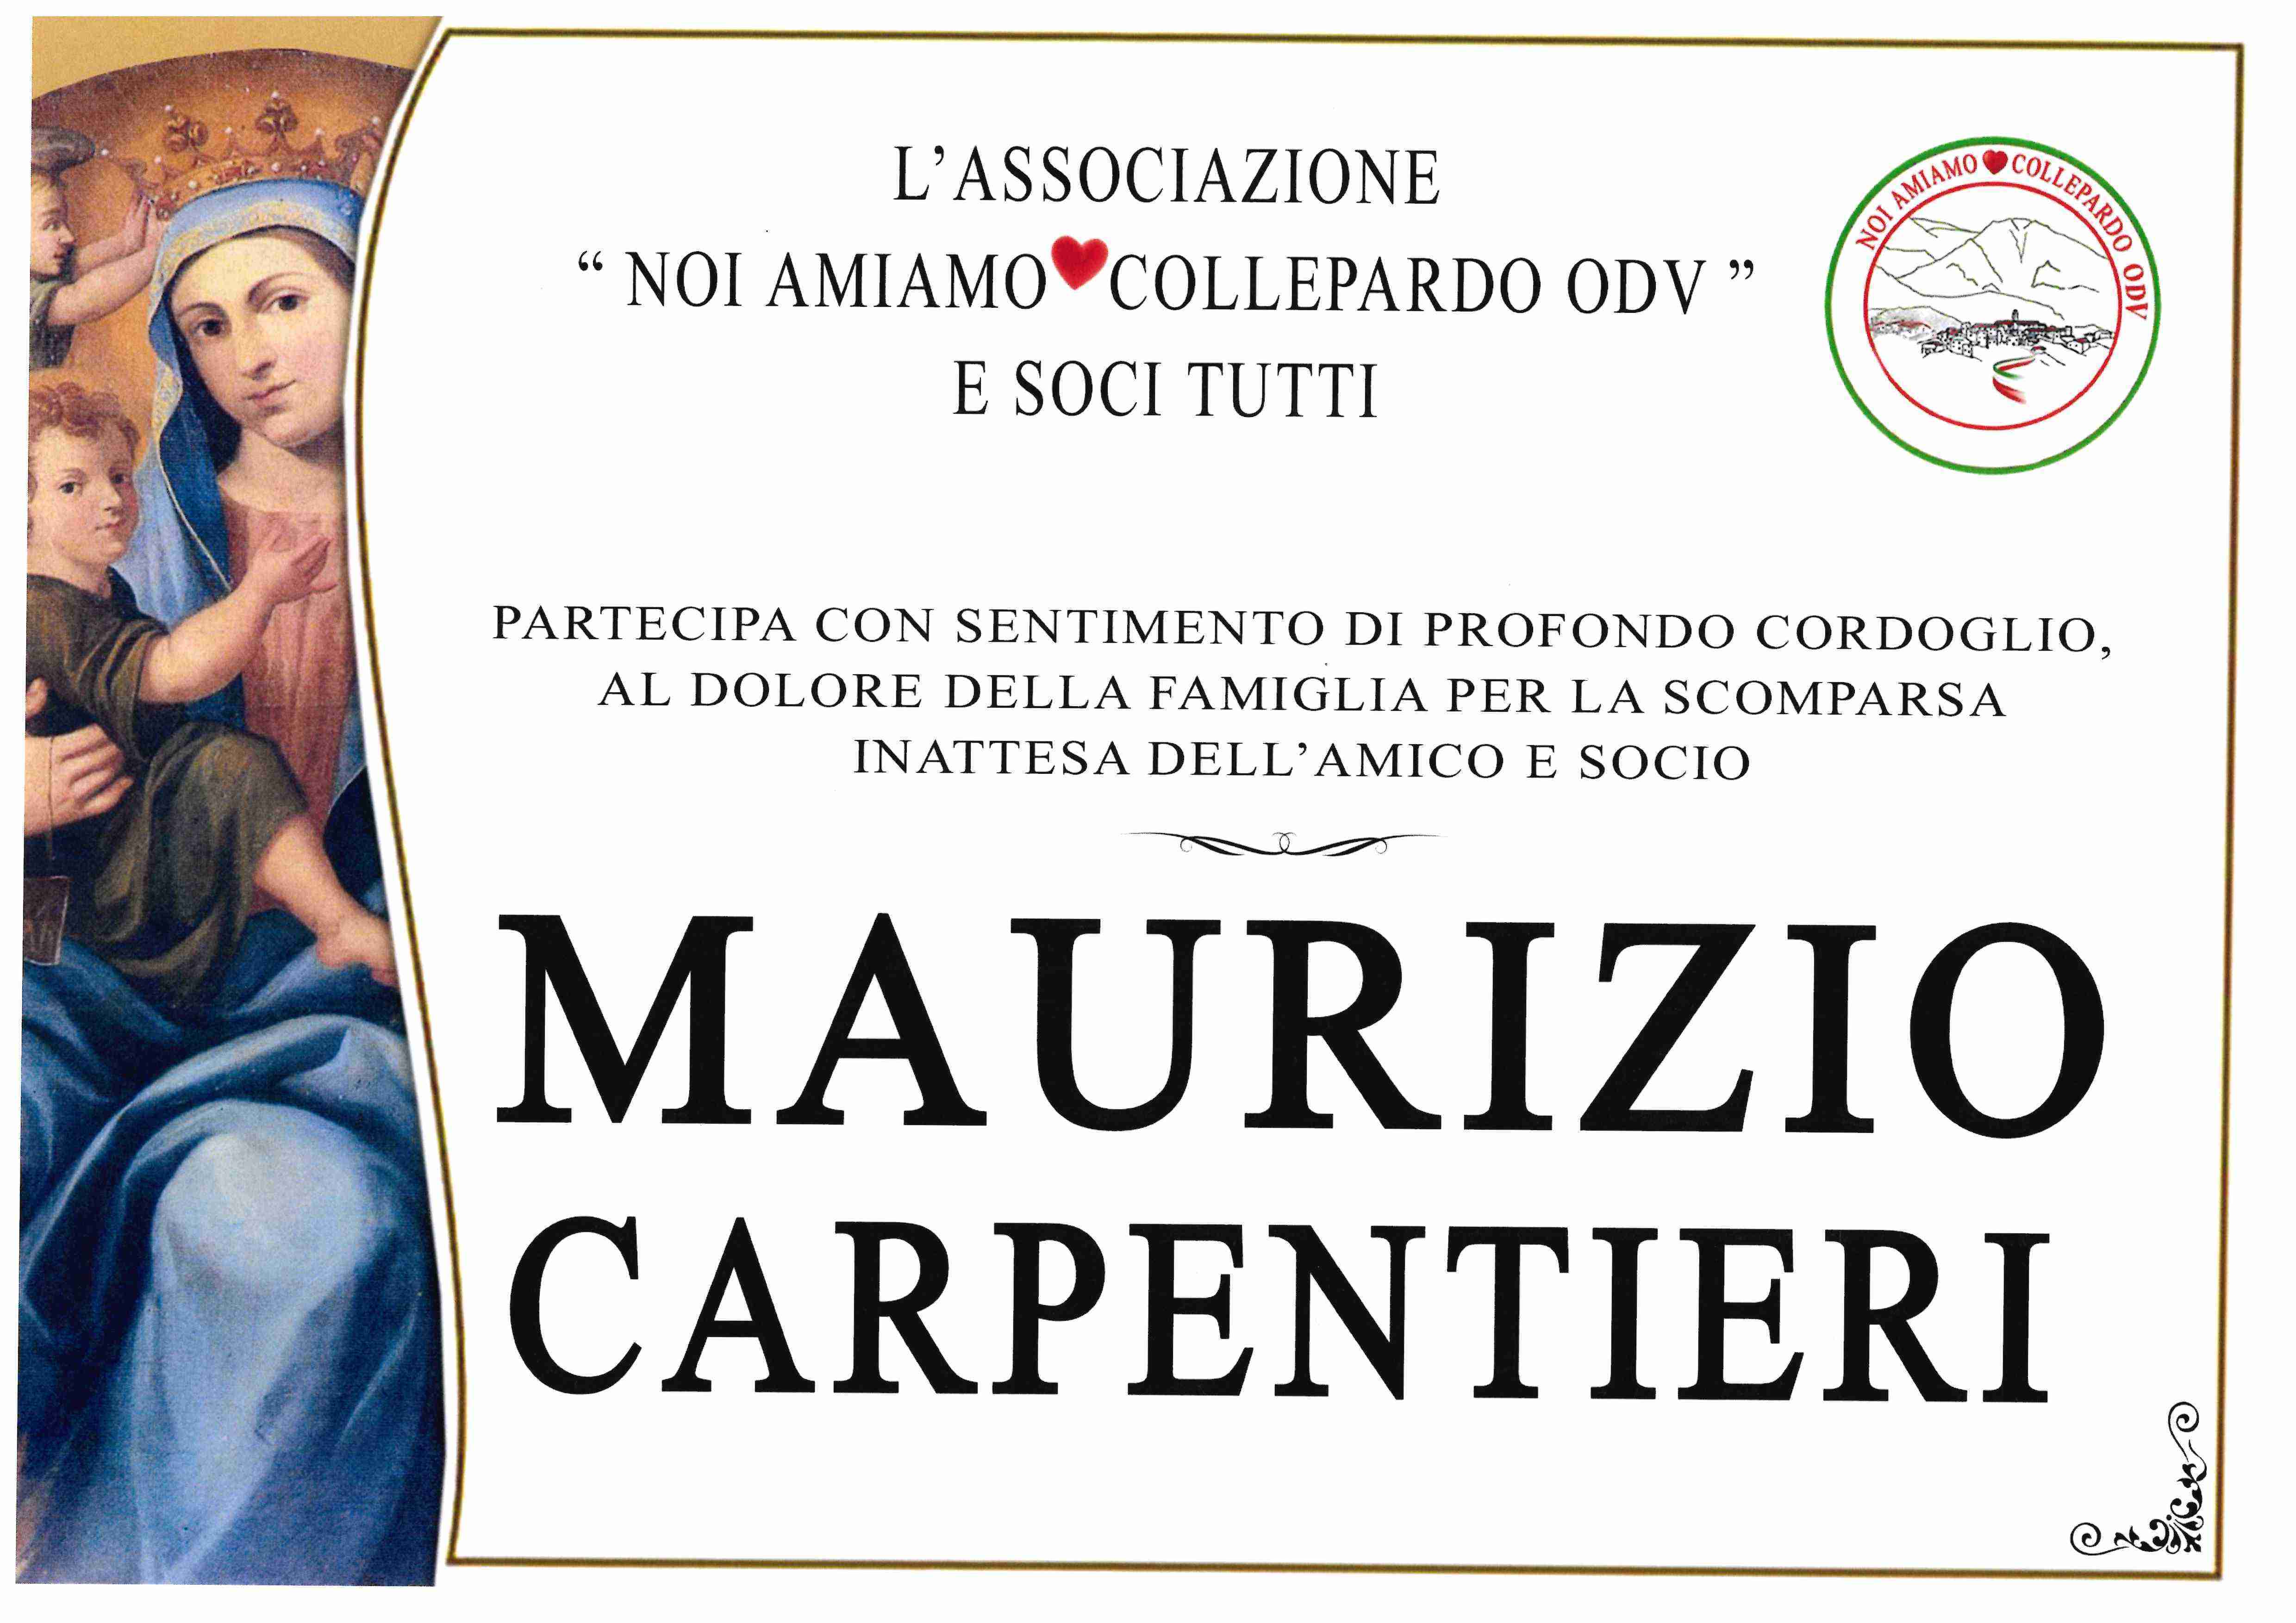 Maurizio Carpentieri